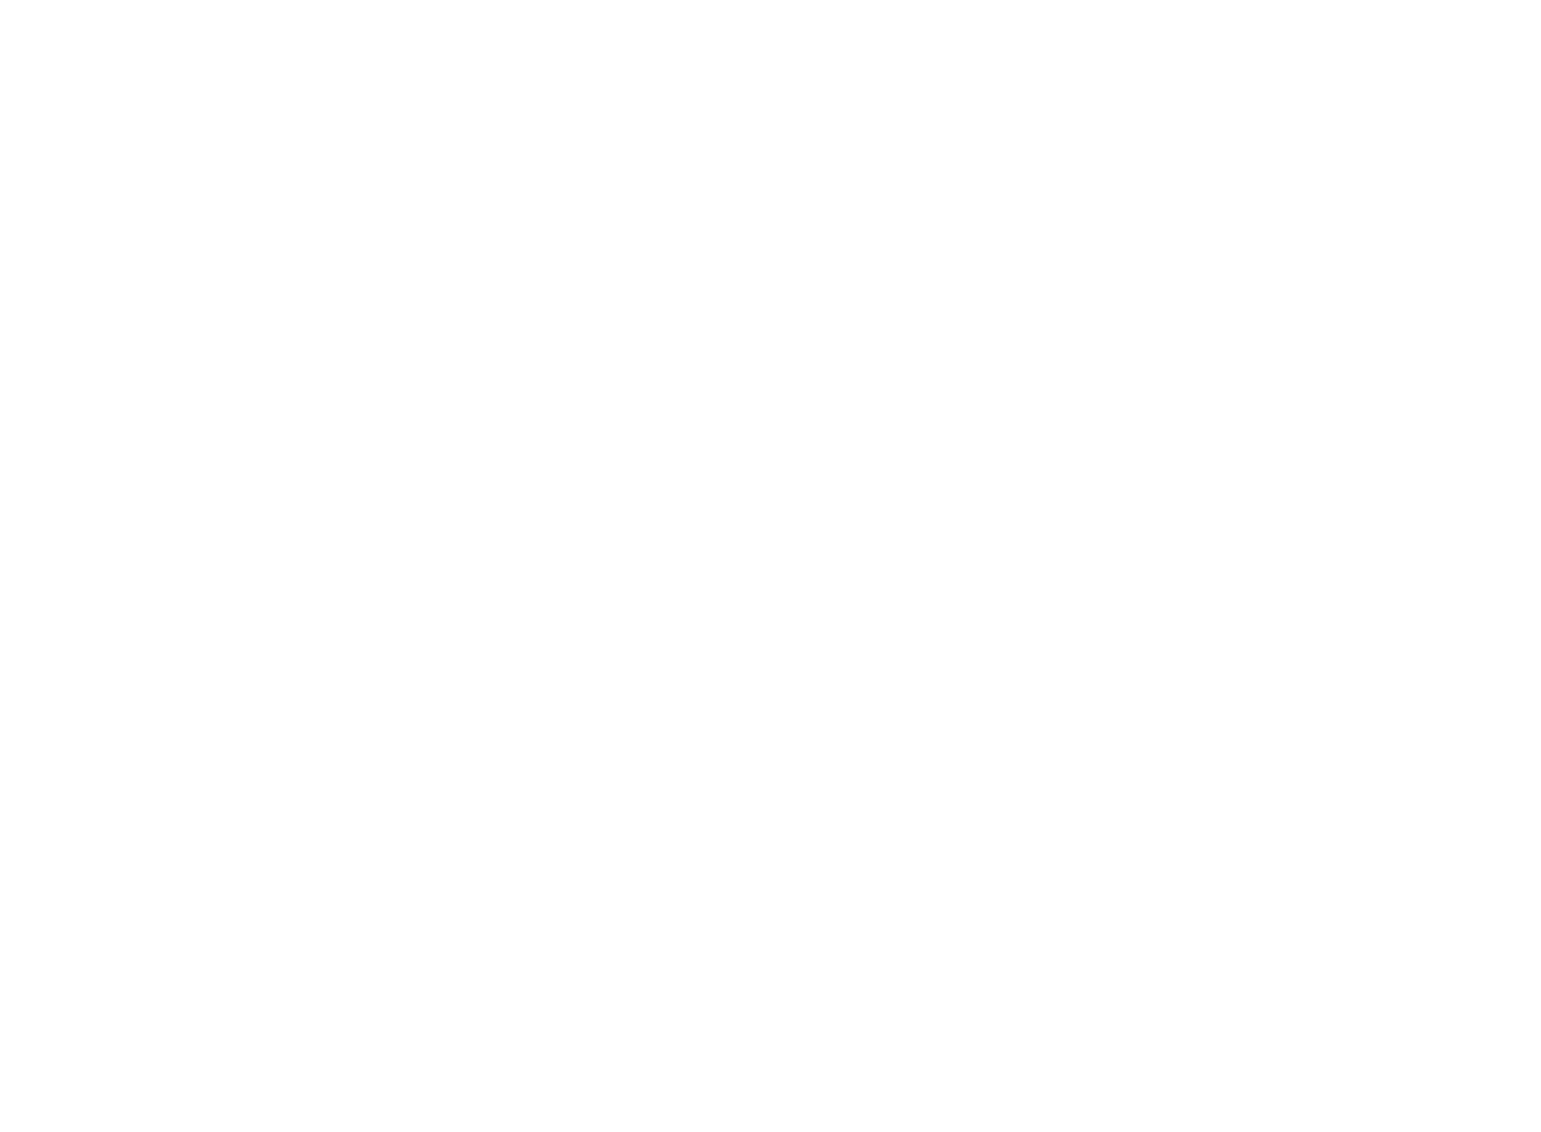 UNO Minda logo pour fonds sombres (PNG transparent)